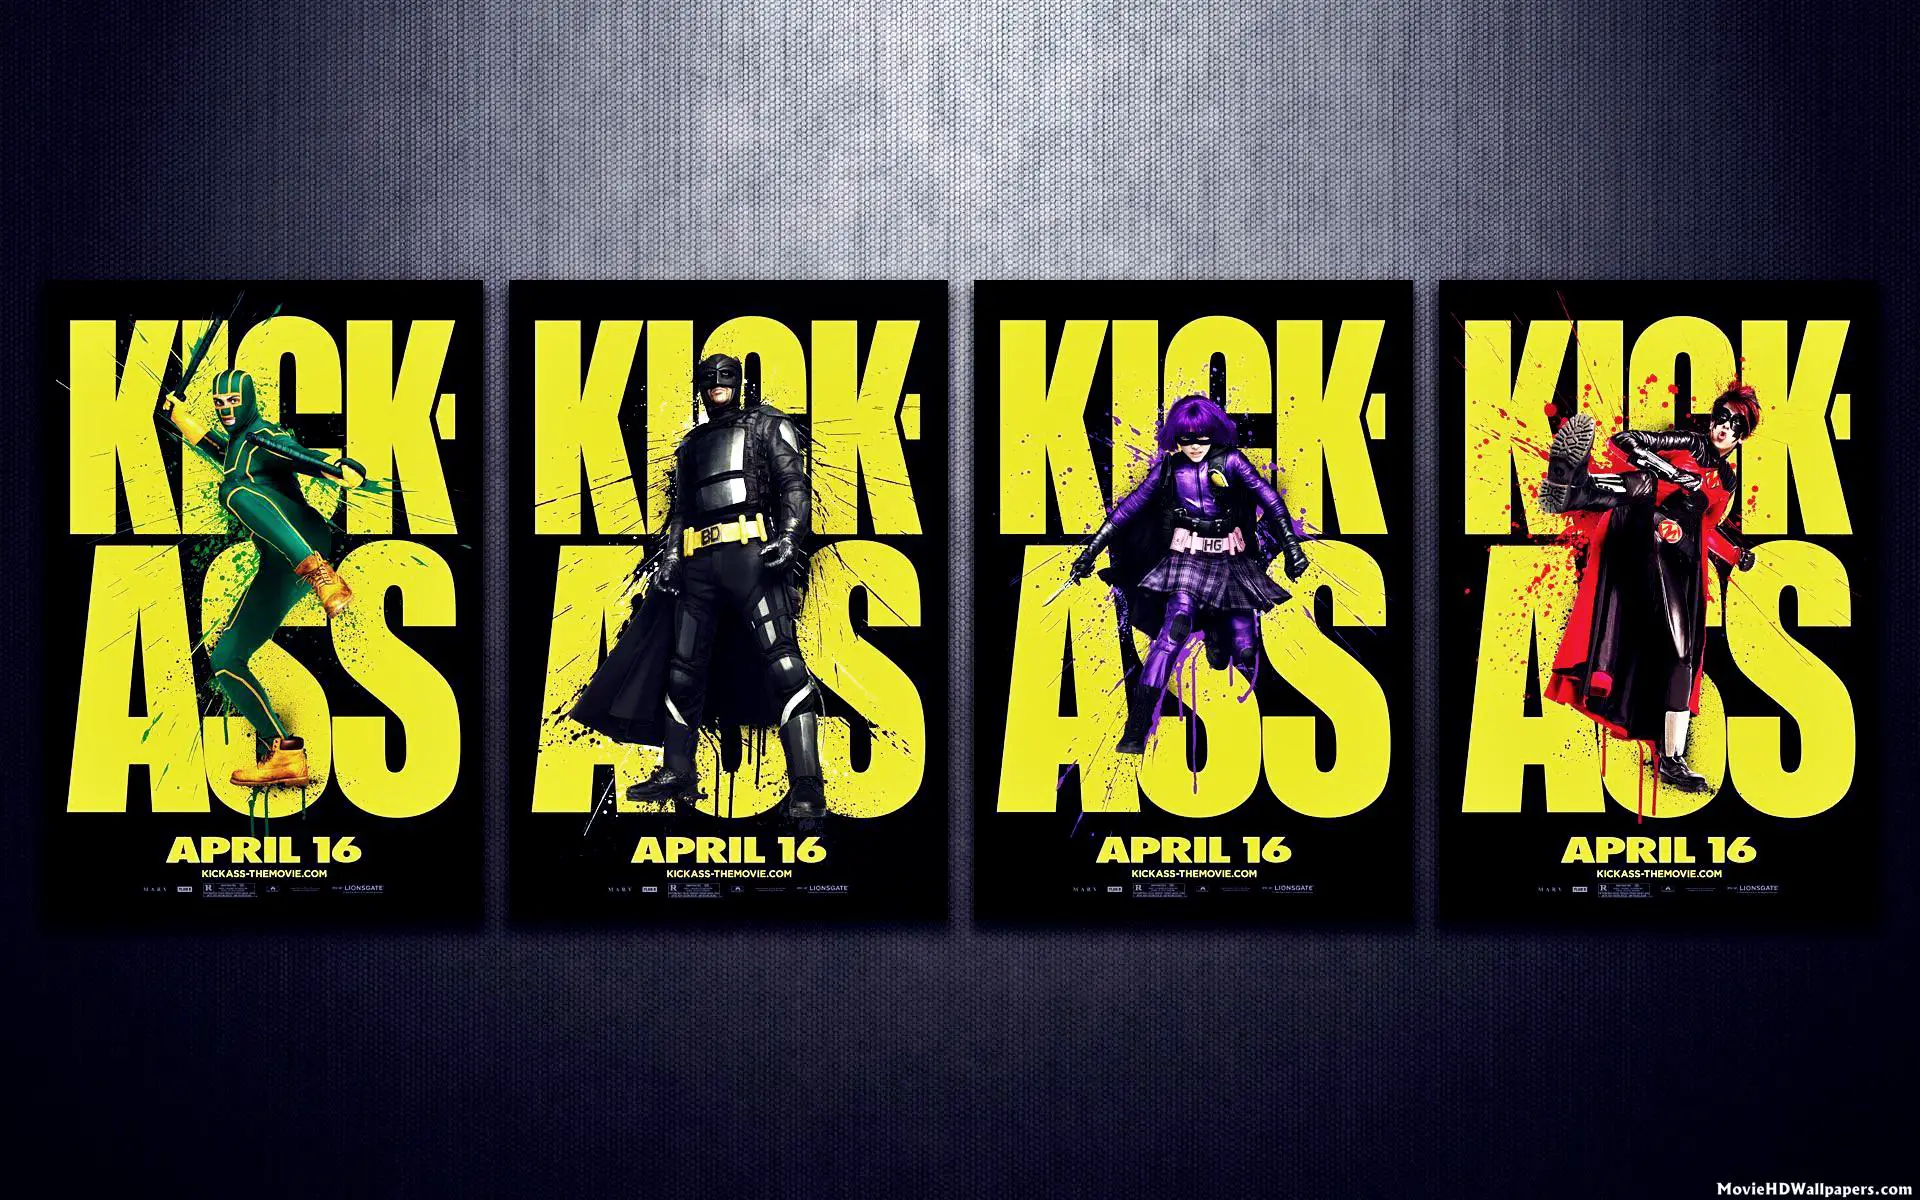 2013 Kick-Ass 2